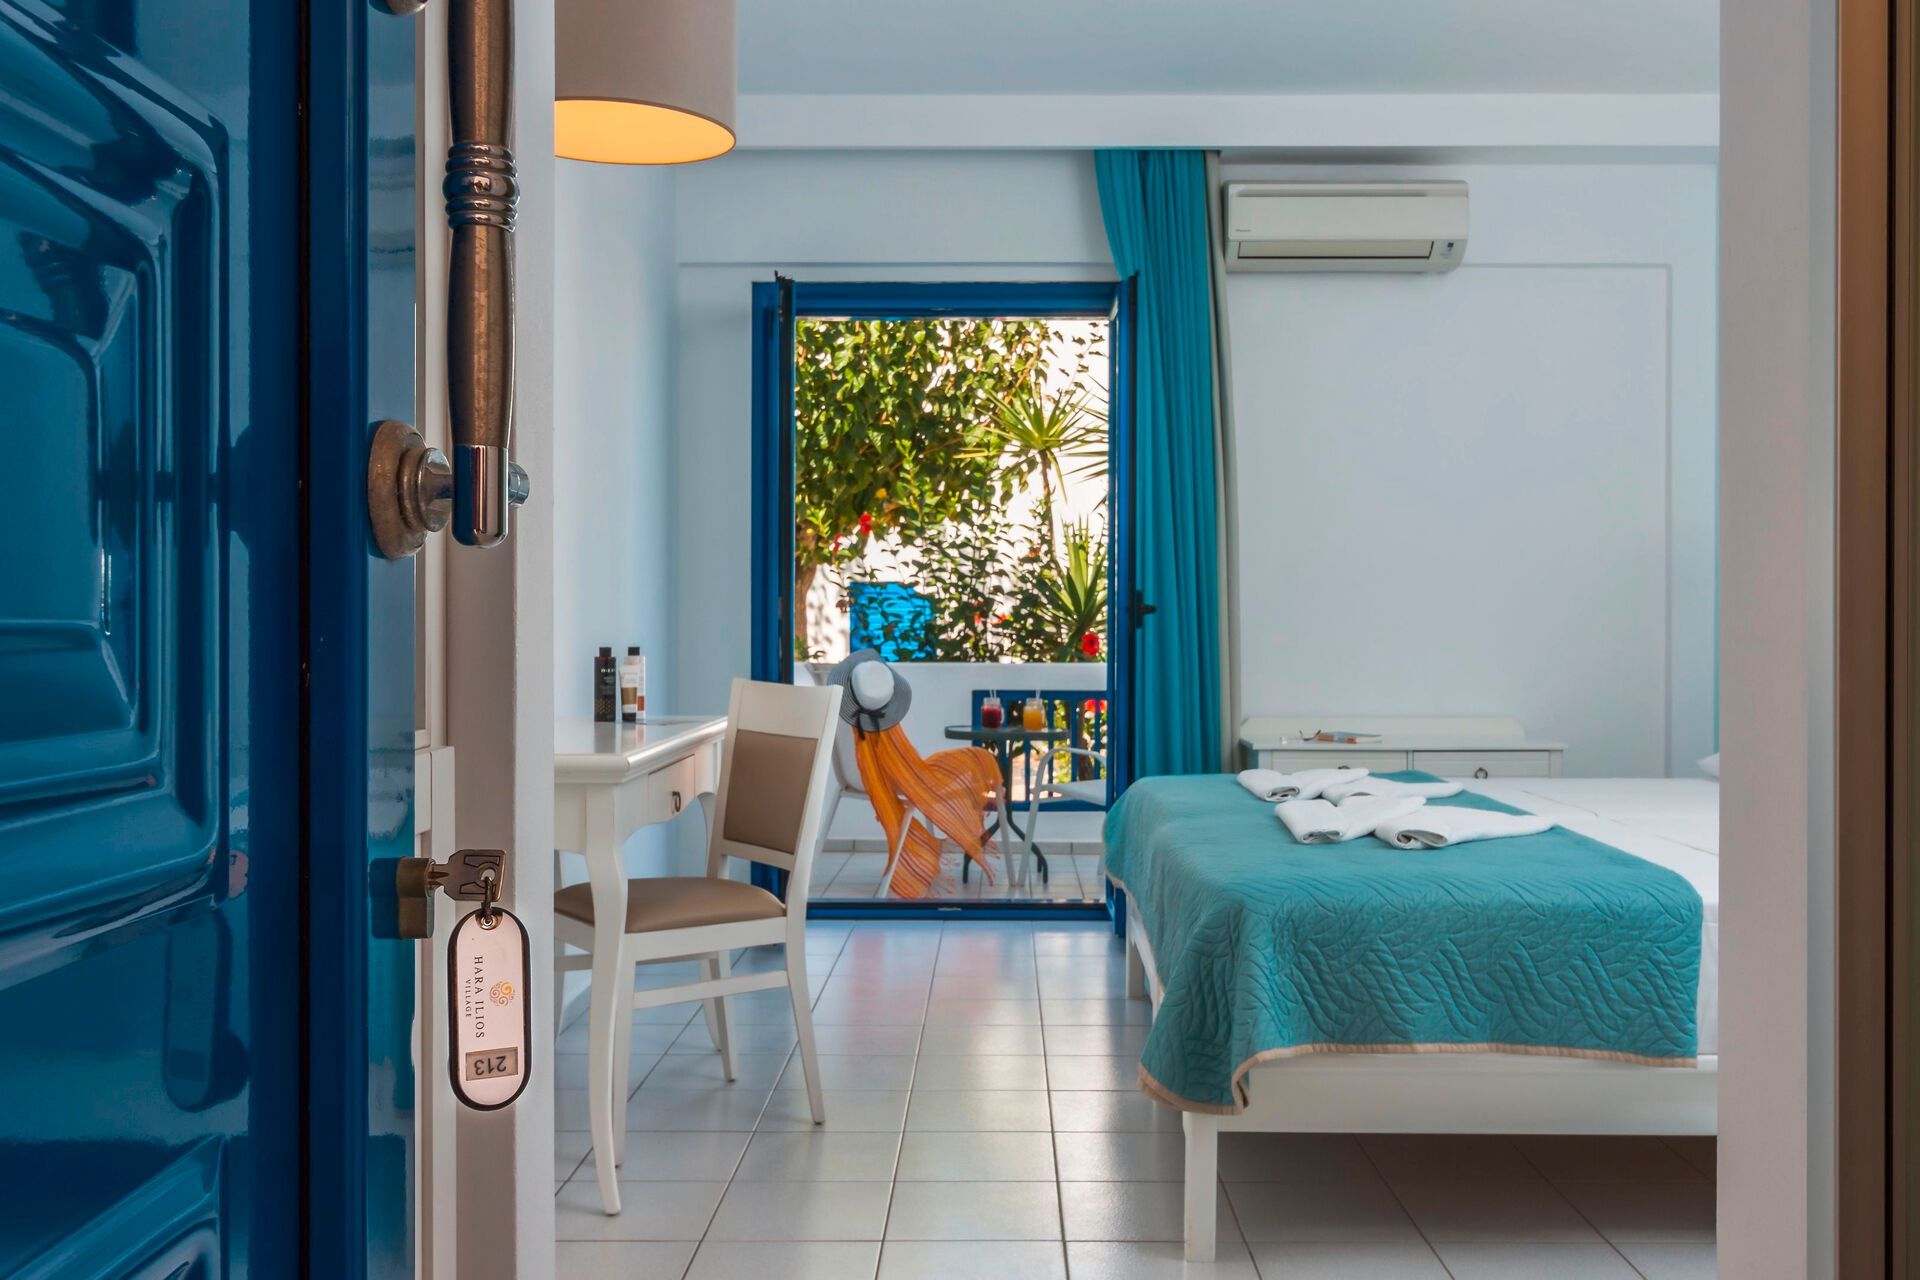 Crète - Gouves - Grèce - Iles grecques - Hara Ilios Village Hotel 4*